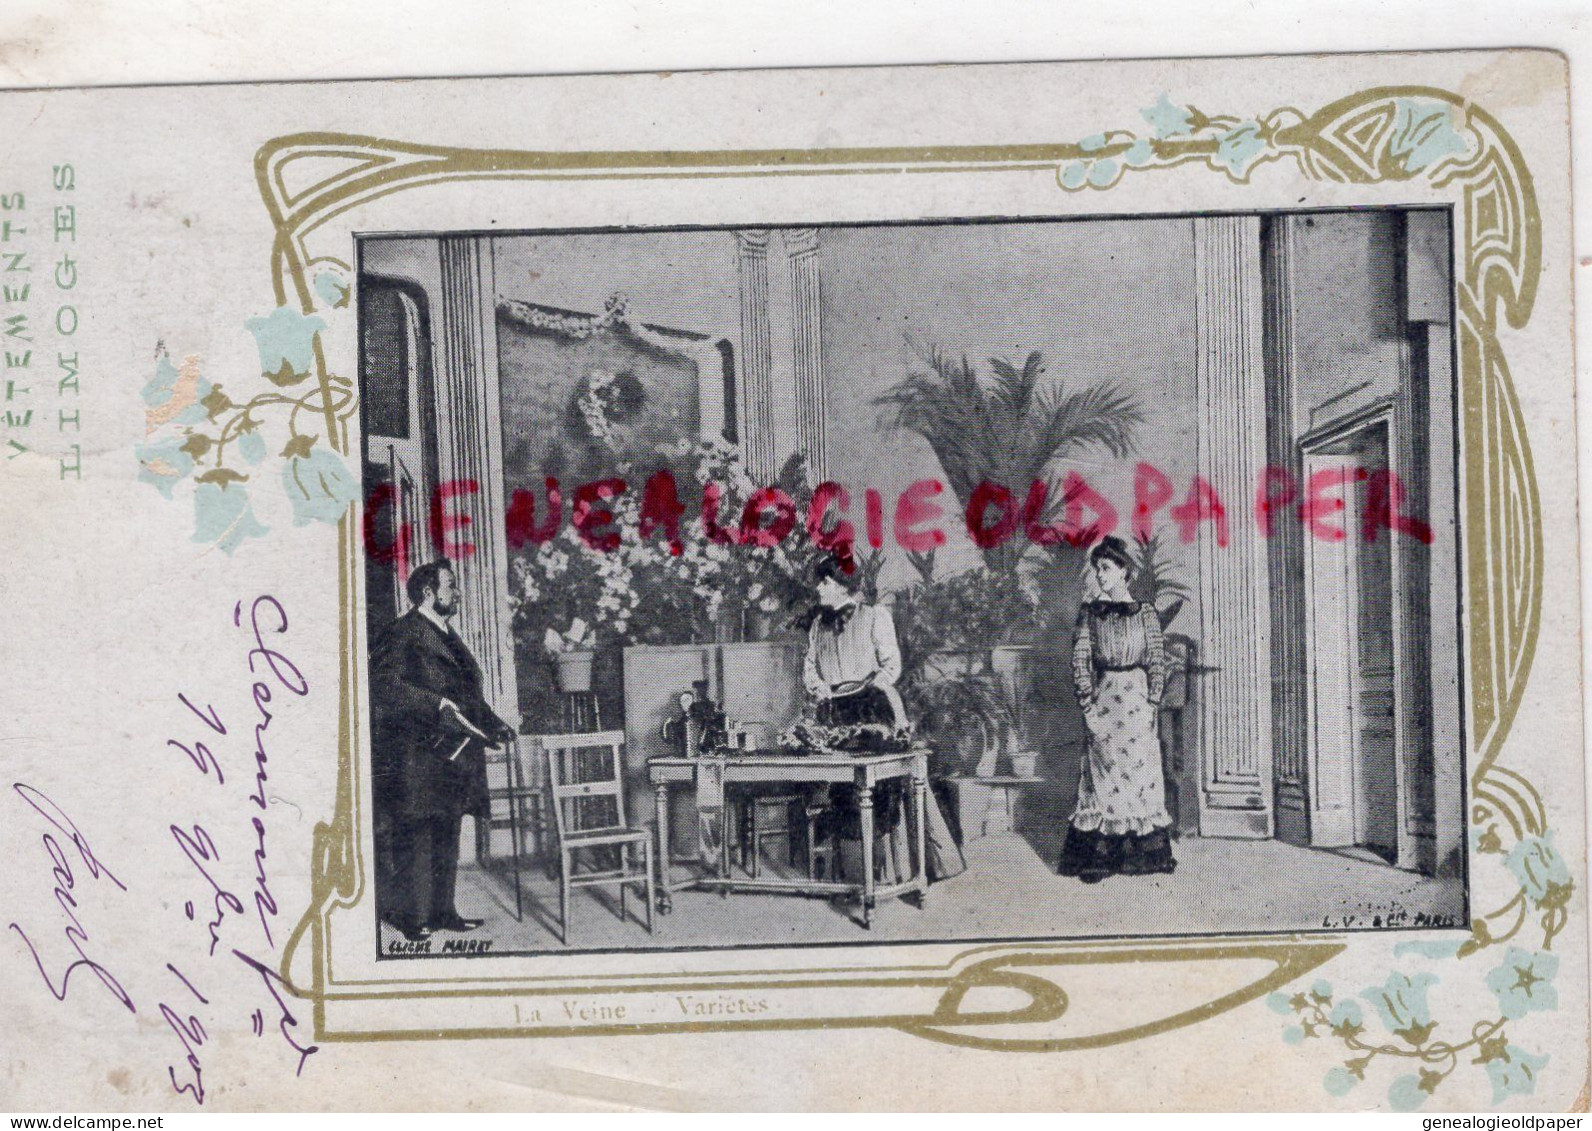 87- LIMOGES -MAGASIN VETEMENTS  A DONY -1903-  RUE DES HALLES- ALEXANDRE DONY ORIGINAIRE DE ST SAINT VICTURNIEN - Textile & Clothing